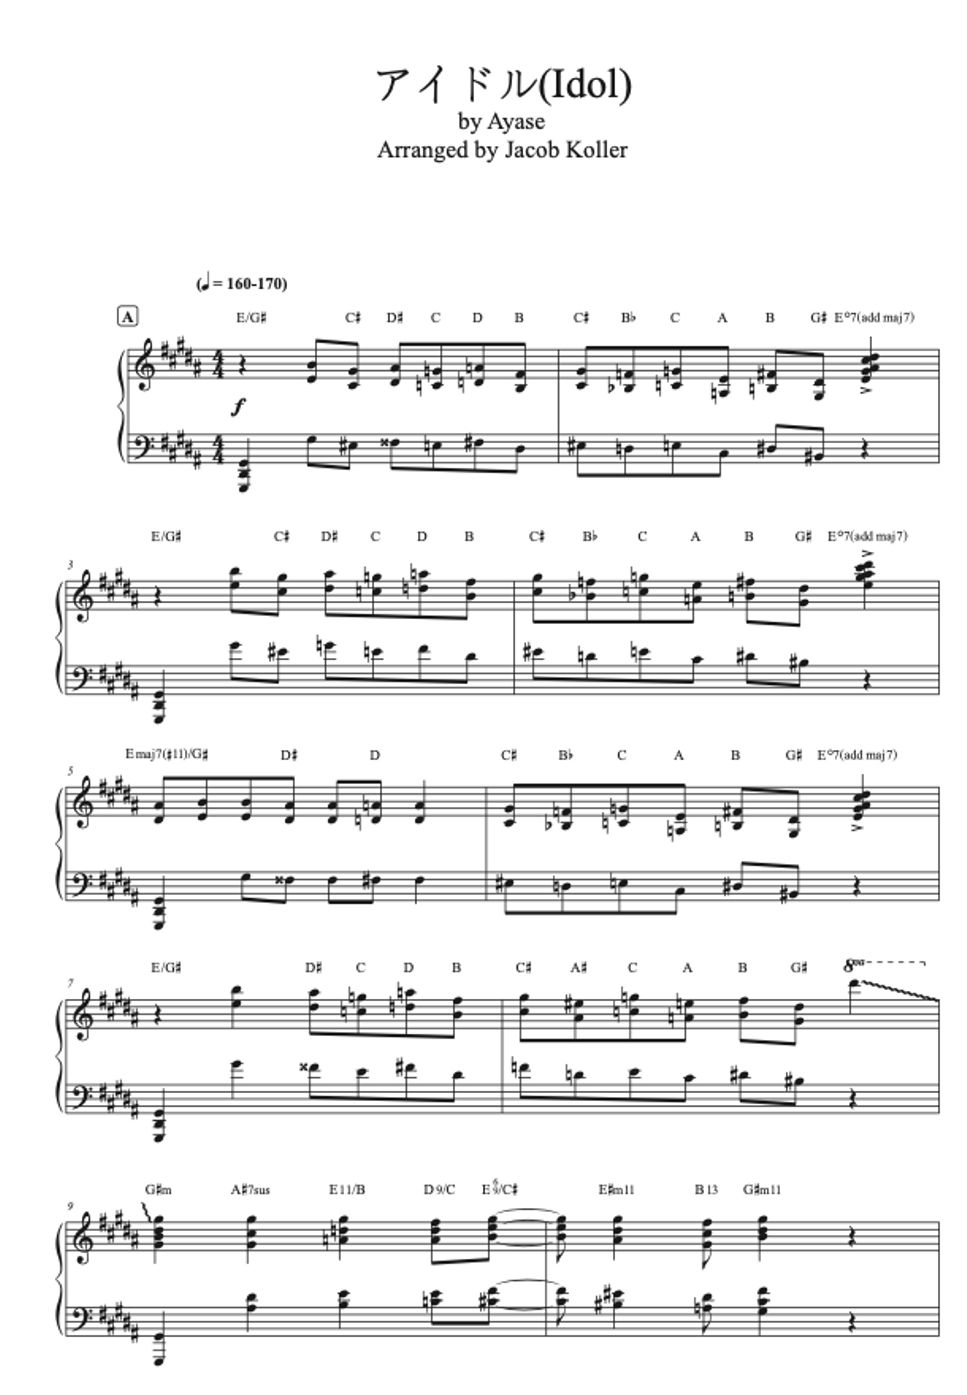 Yoasobi - Idol (Jazz Piano Arrangement) by Jacob Koller